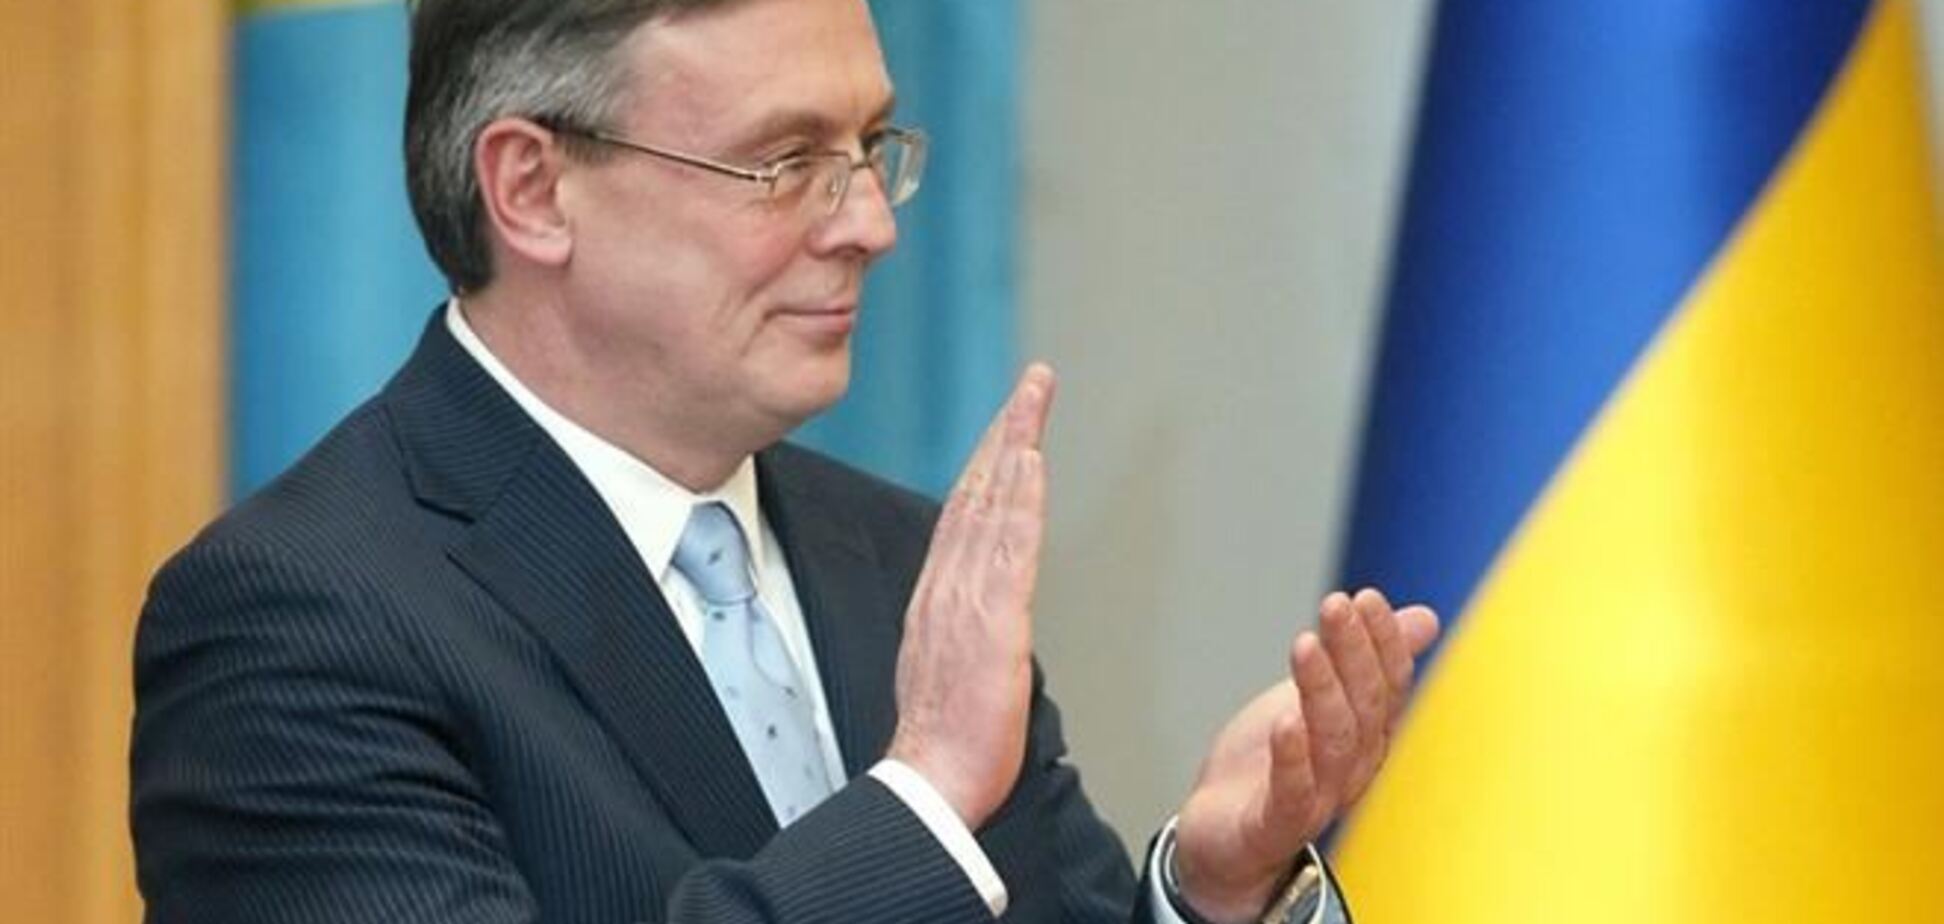 Украина возобновит переговоры с ЕС после новогодних праздников - МИД